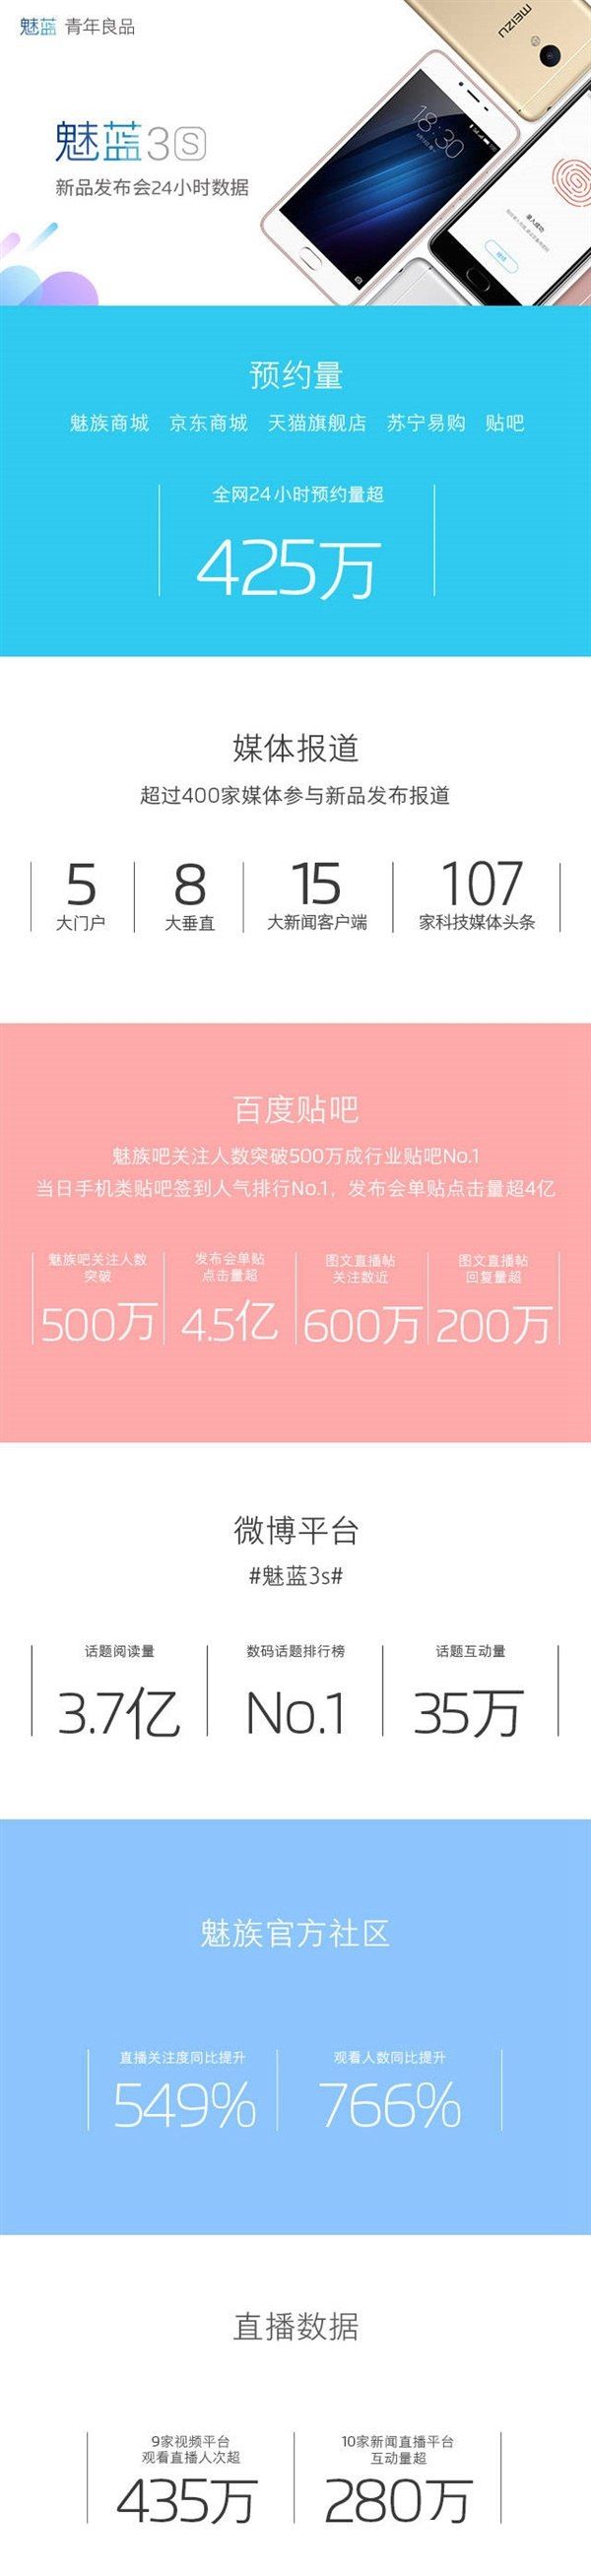 699元魅蓝3S预约量惊人 一天不到超425万用户预约